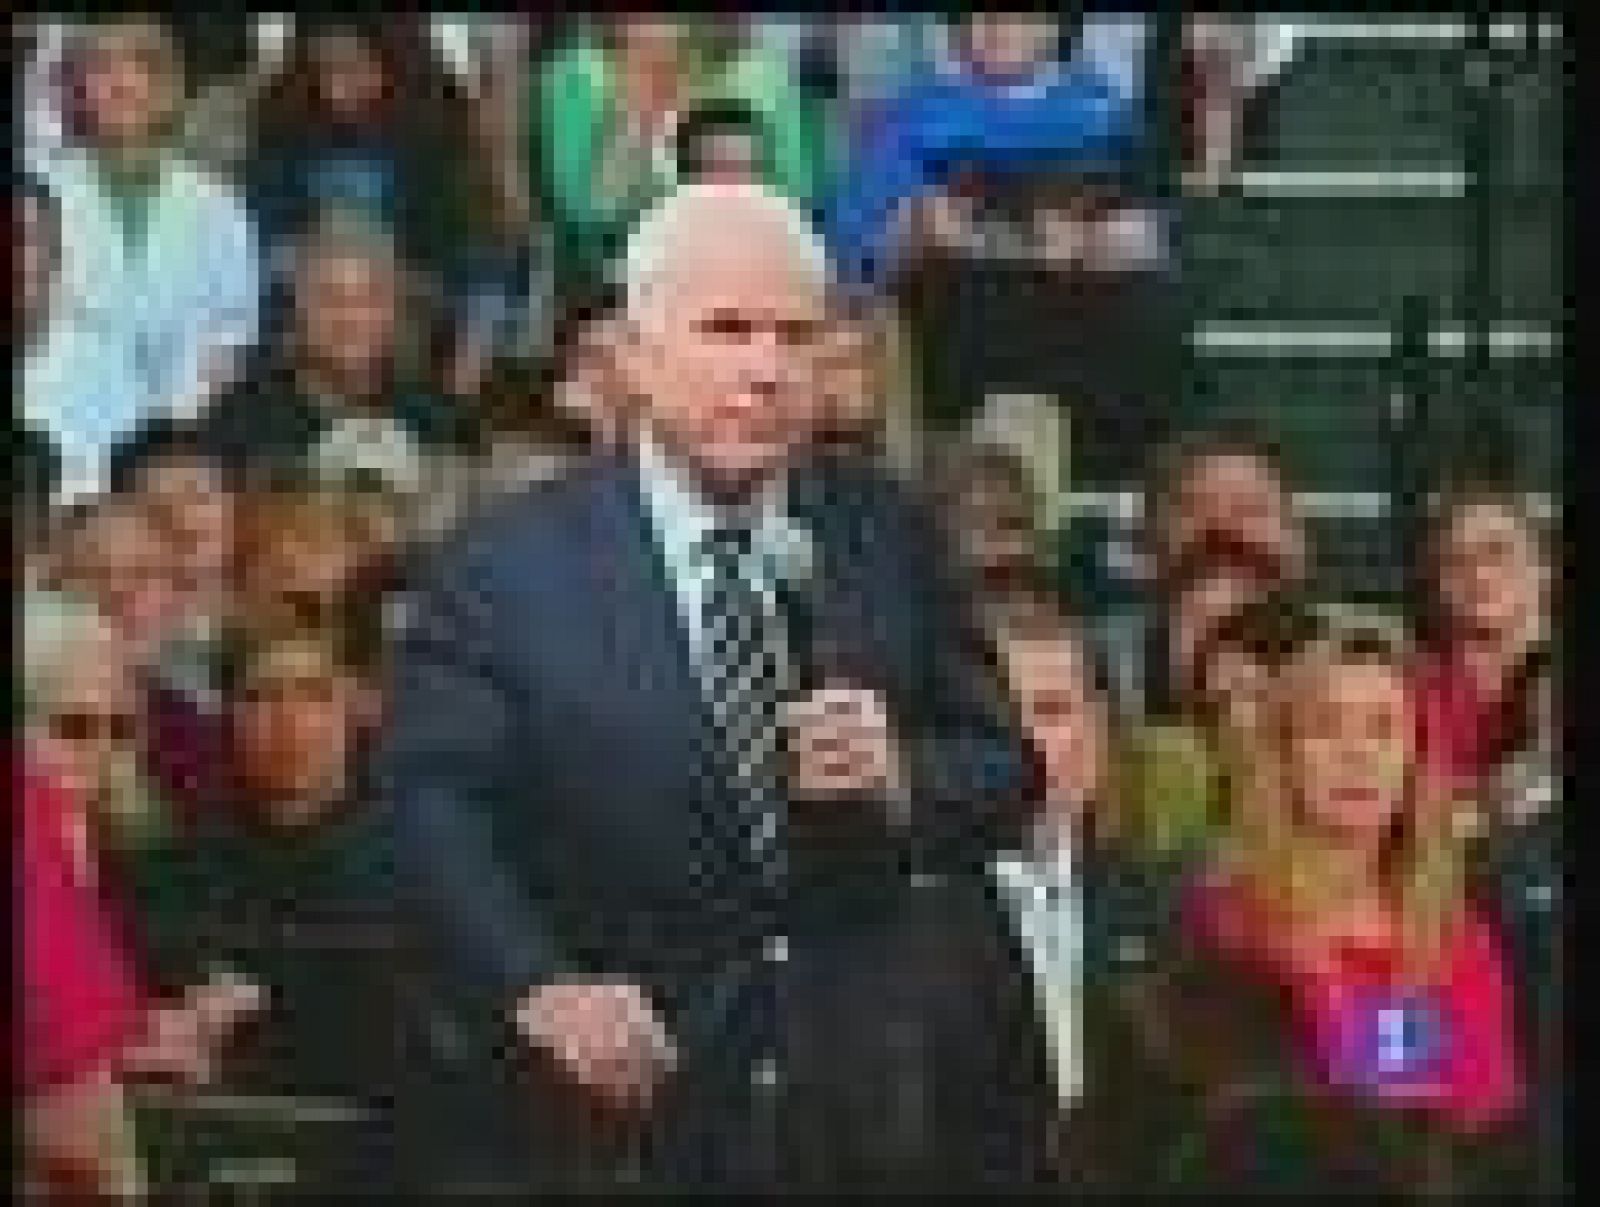 Obama mantiene una clara ventaja de entre 4 y 10 puntos según los últimos sondeos. McCain anticipa que jugará al ataque en el último debate, previsto para la madrugada del miércoles al jueves. 